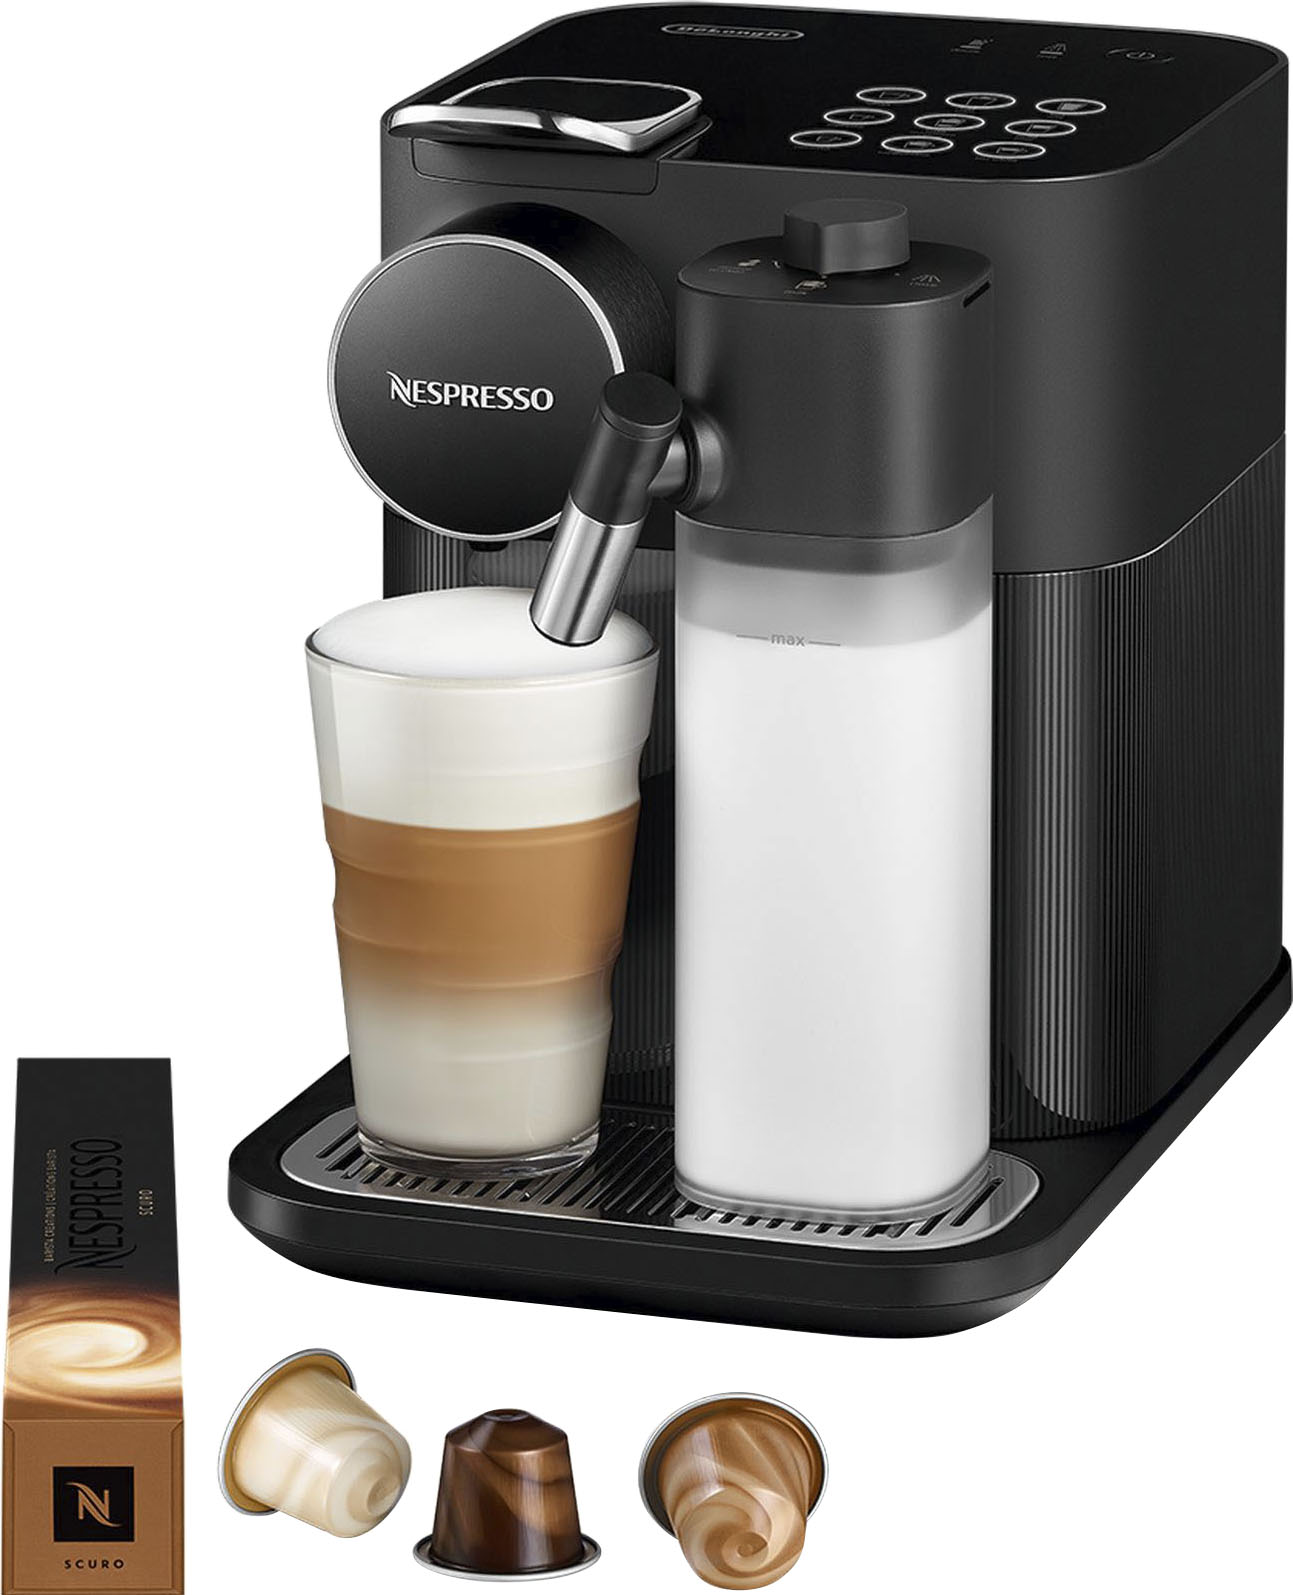 Nespresso Kaffeemaschinen jetzt günstig bestellen Teilzahlung auf